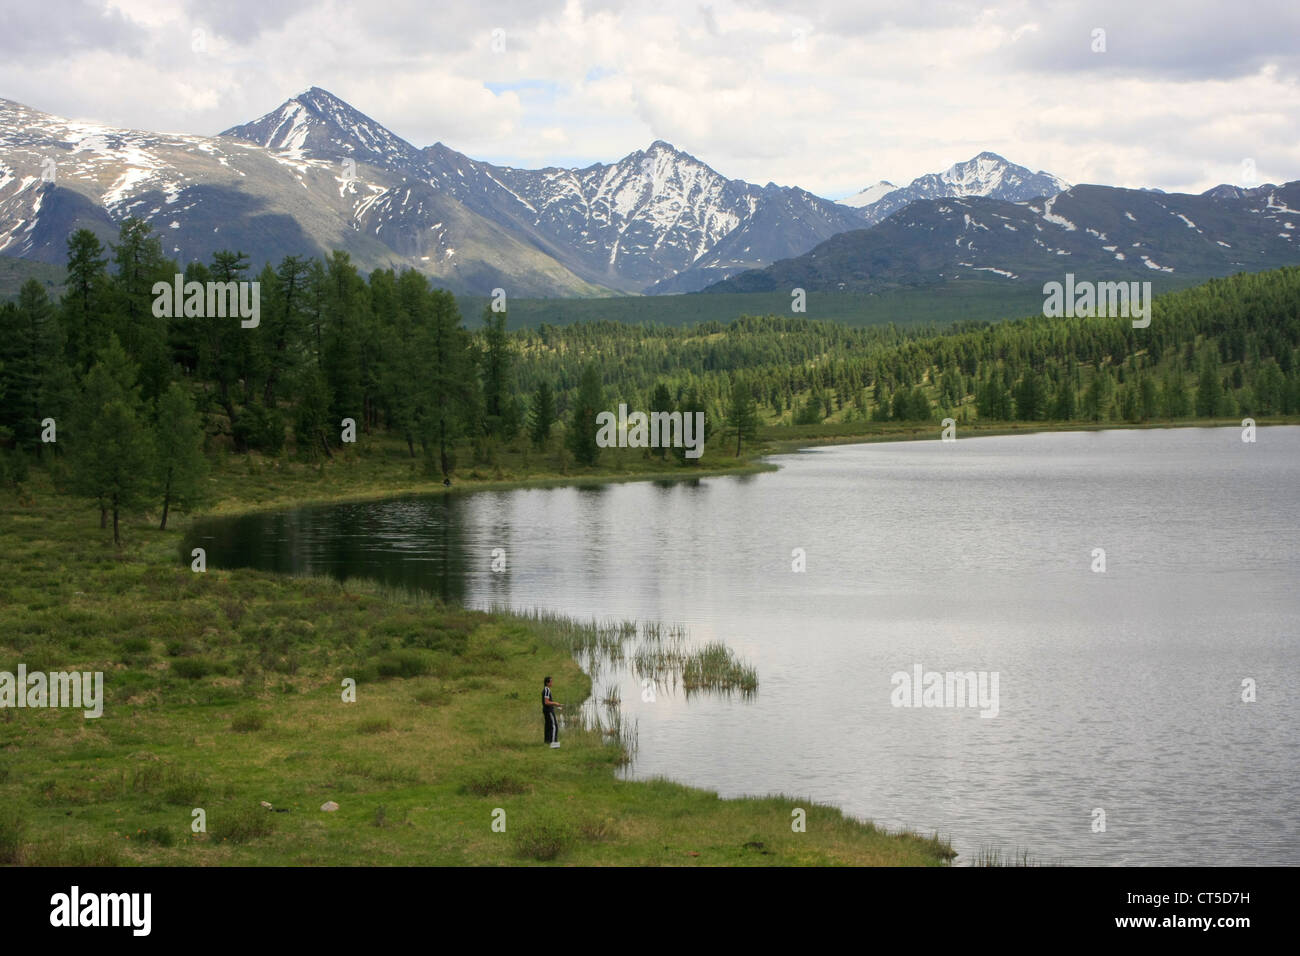 Perevalnoe lago circondato da pini incontaminate foreste e montagne dalle vette innevate, Ulagansky pass, Altai, Siberia, Russia Foto Stock